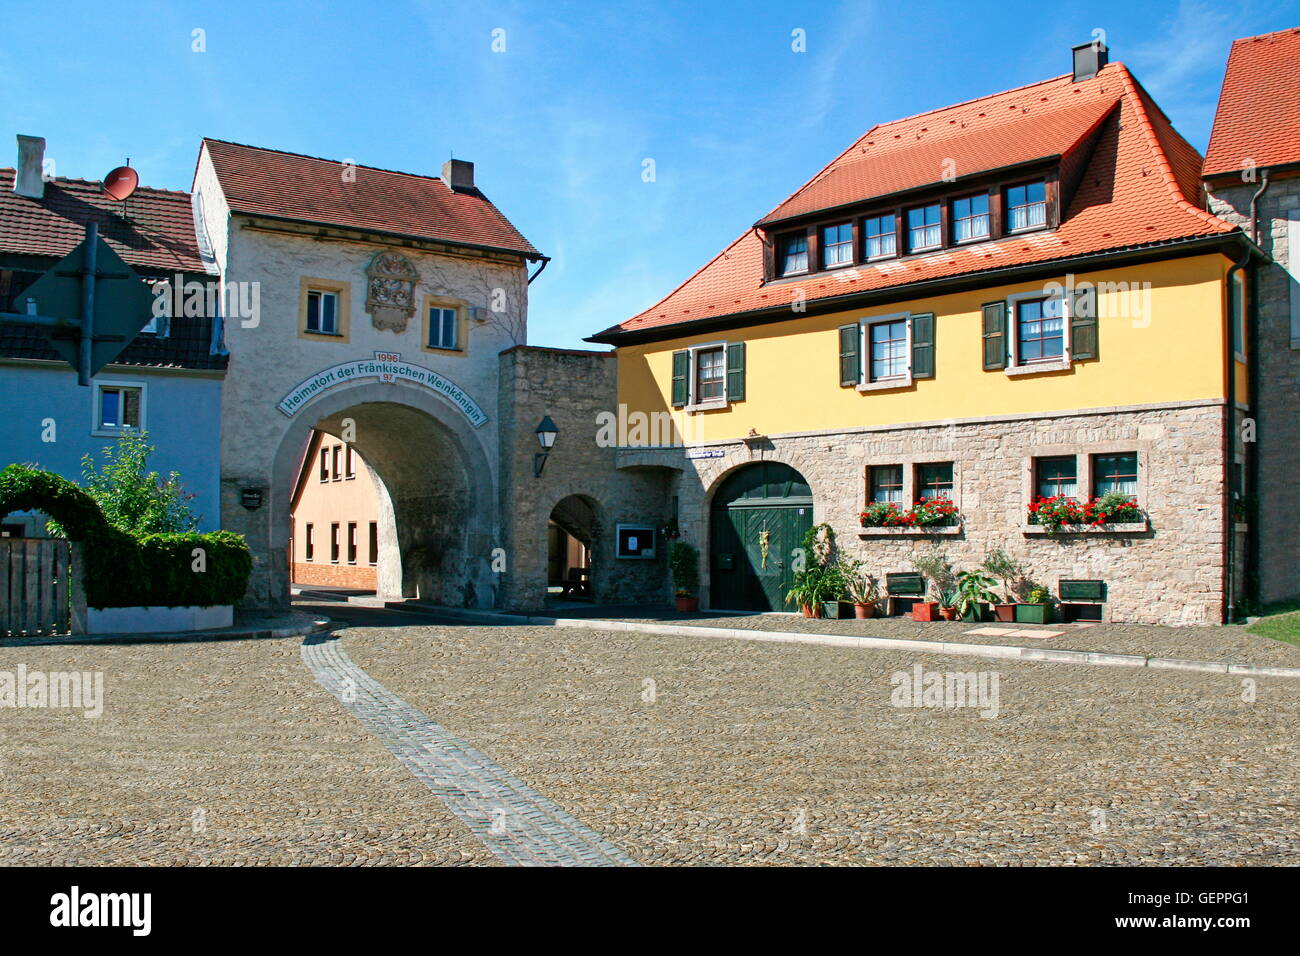 Geografía / viajes, Alemania, Baviera, Eibelstadt, puerta superior, construido con el escudo de piedra de la ciudad tres regentes Foto de stock